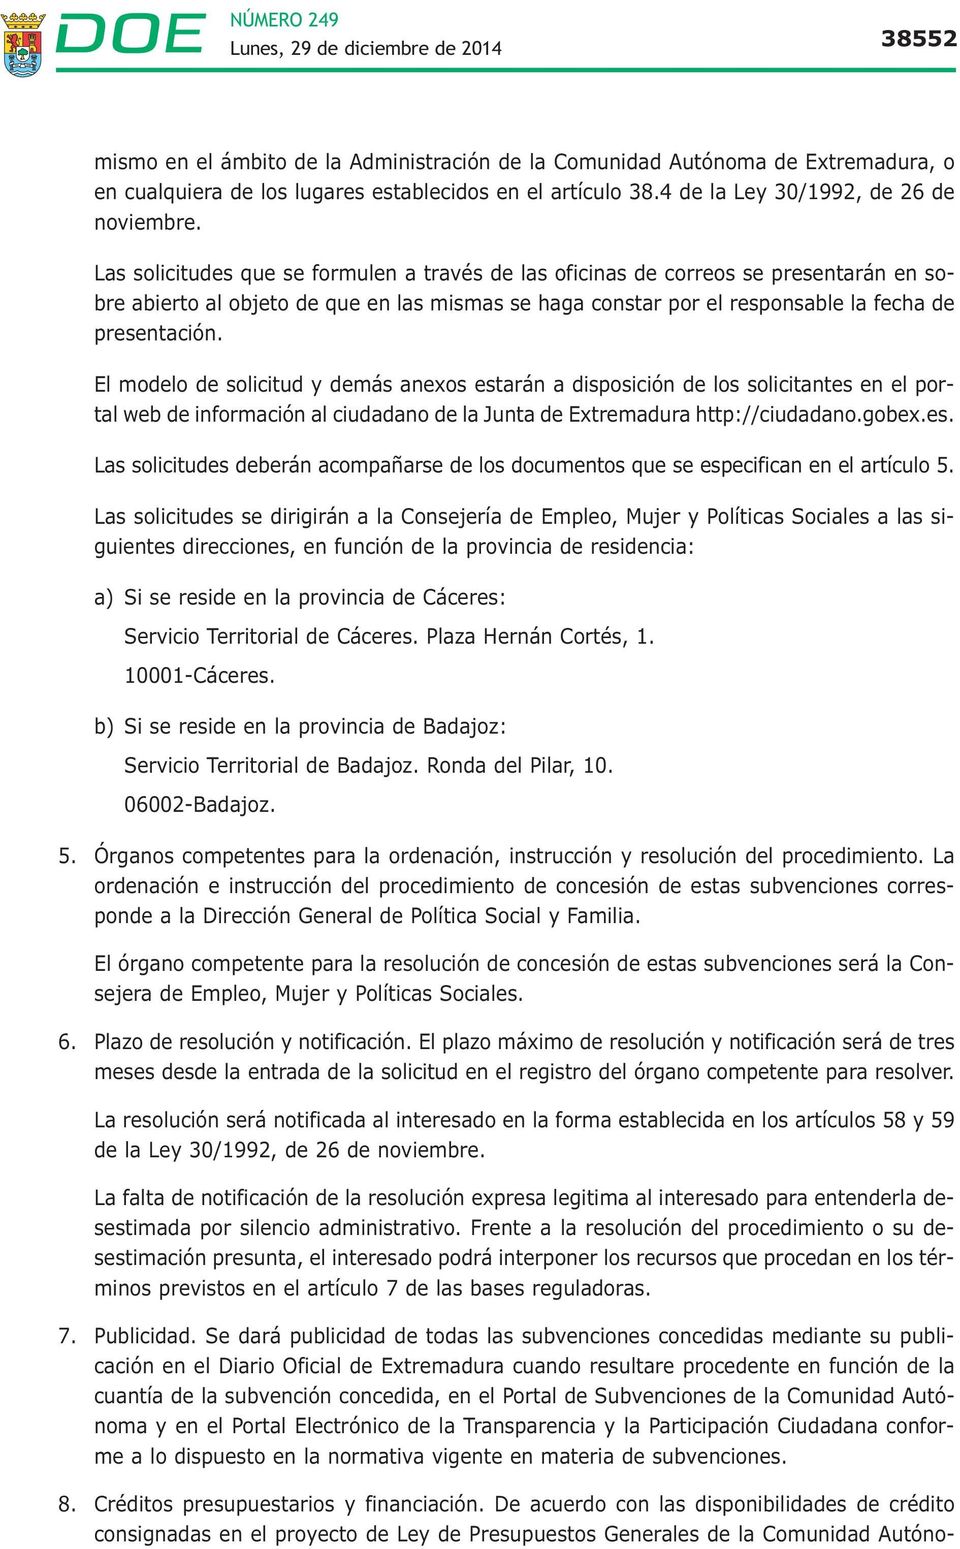 El modelo de solicitud y demás anexos estarán a disposición de los solicitantes en el portal web de información al ciudadano de la Junta de Extremadura http://ciudadano.gobex.es. Las solicitudes deberán acompañarse de los documentos que se especifican en el artículo 5.